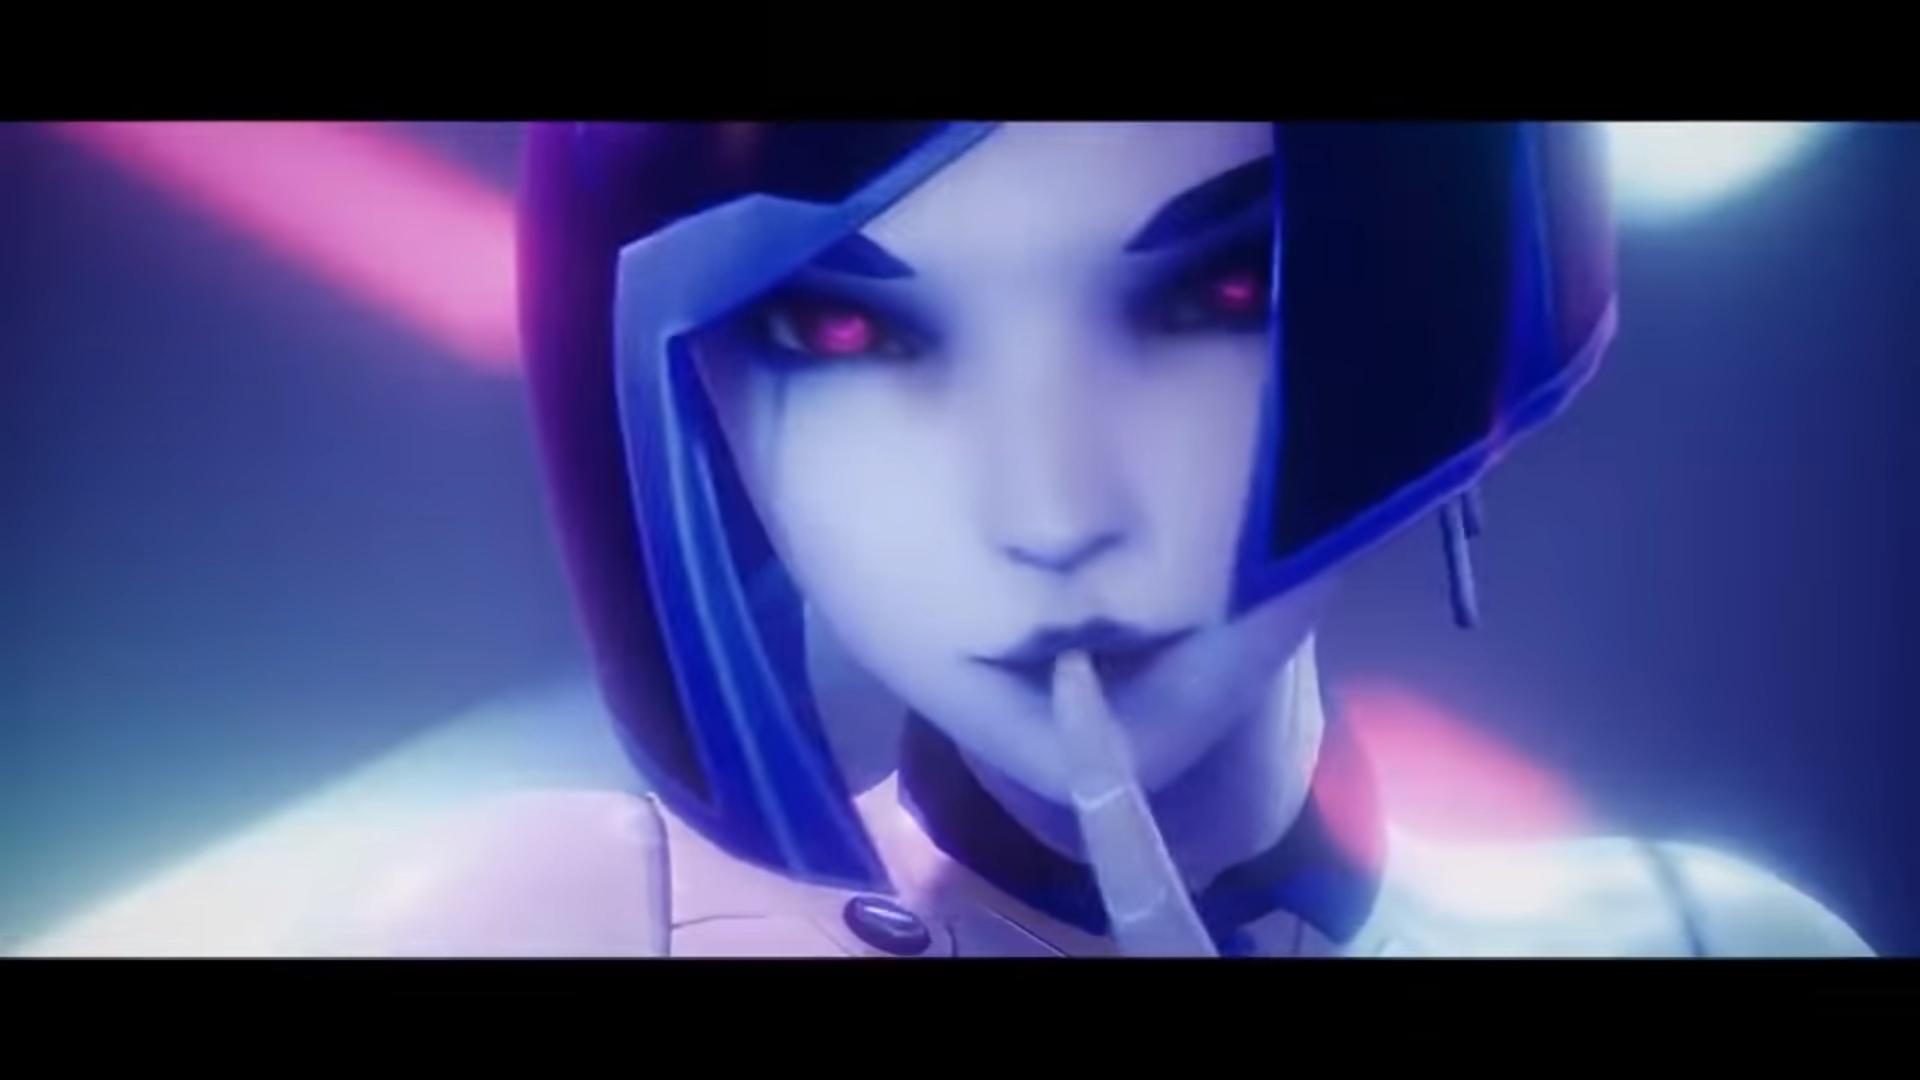 Игроки активно жертвуют средства на разработку игры с откровенными сценами в стиле Mass Effect